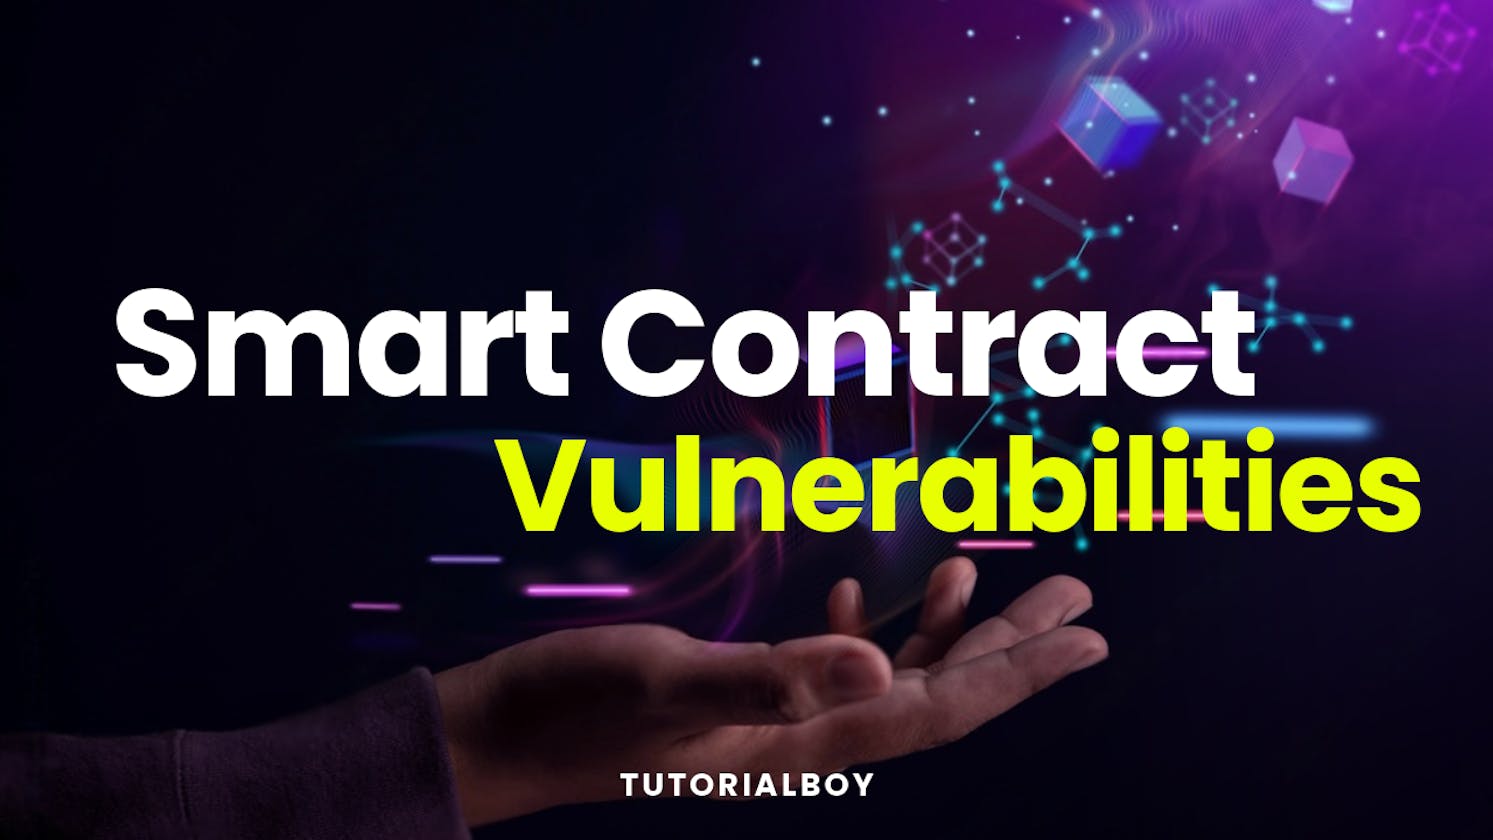 A Deep Dive Understanding of Smart Contract Vulnerabilities - Part 2